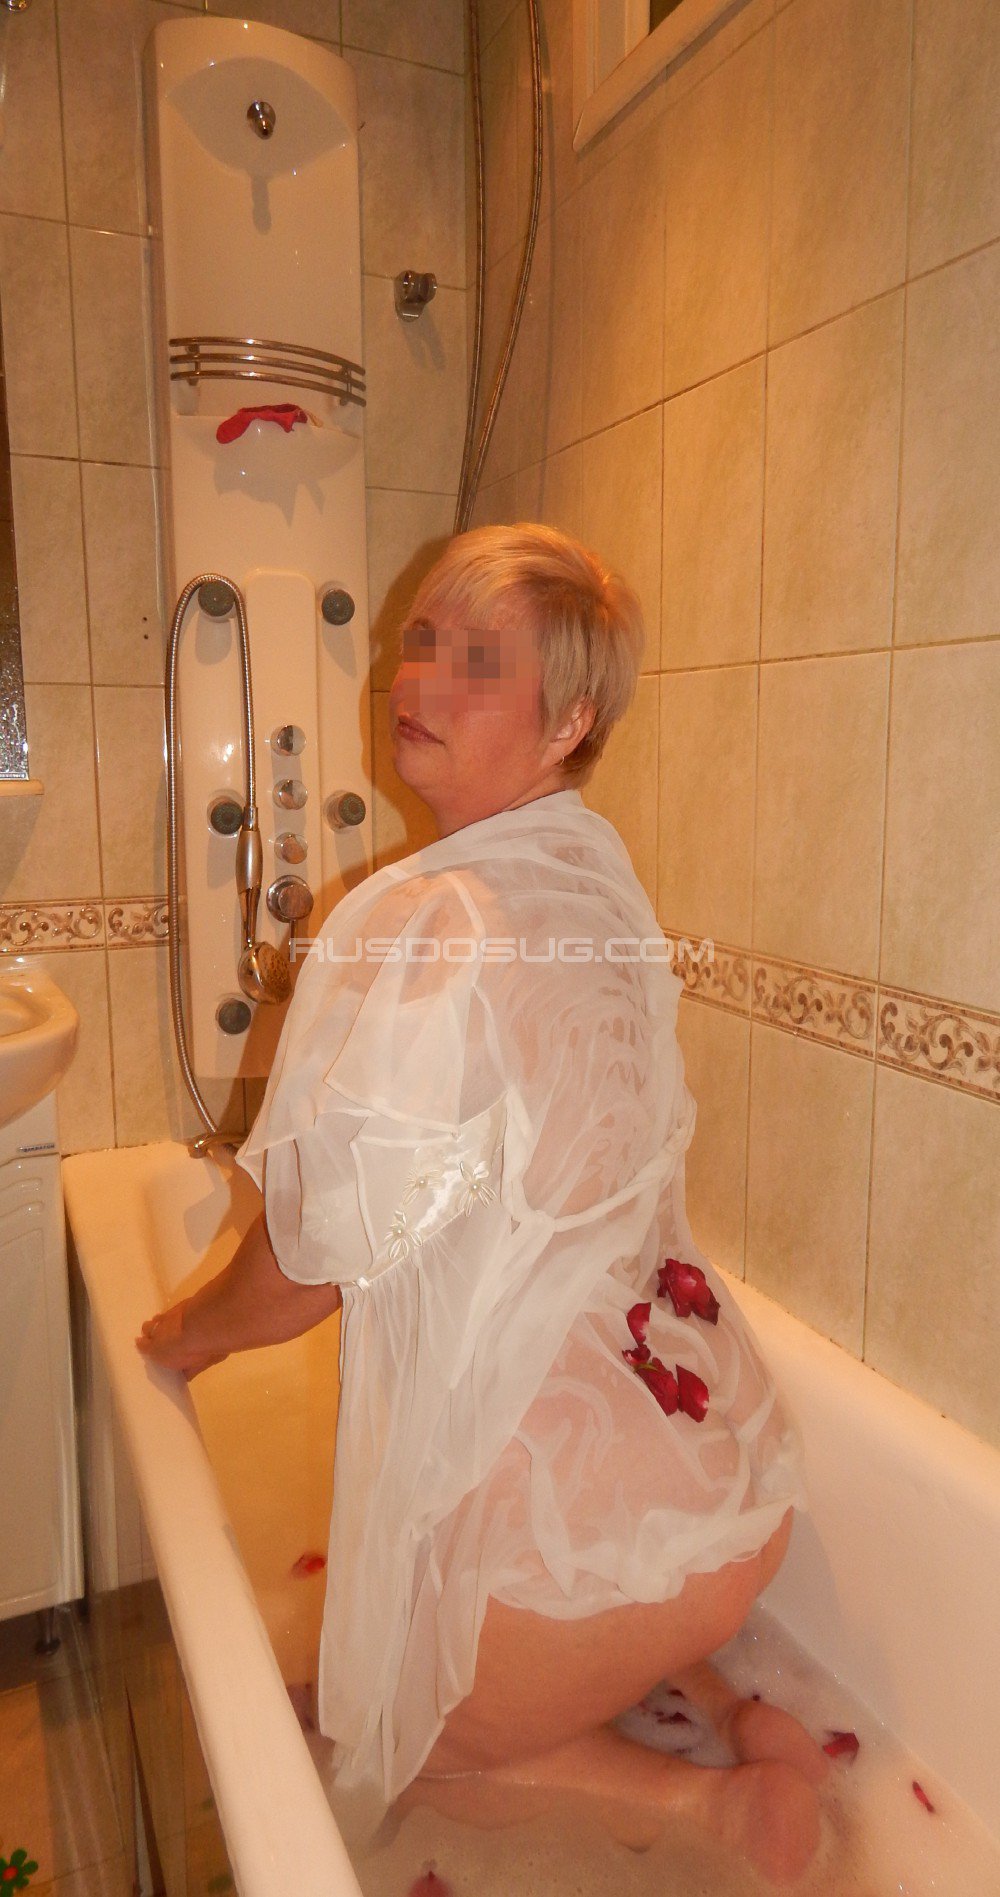 Проститутка Наташа возрастом 45 с ростом 165 см для интима в Москве